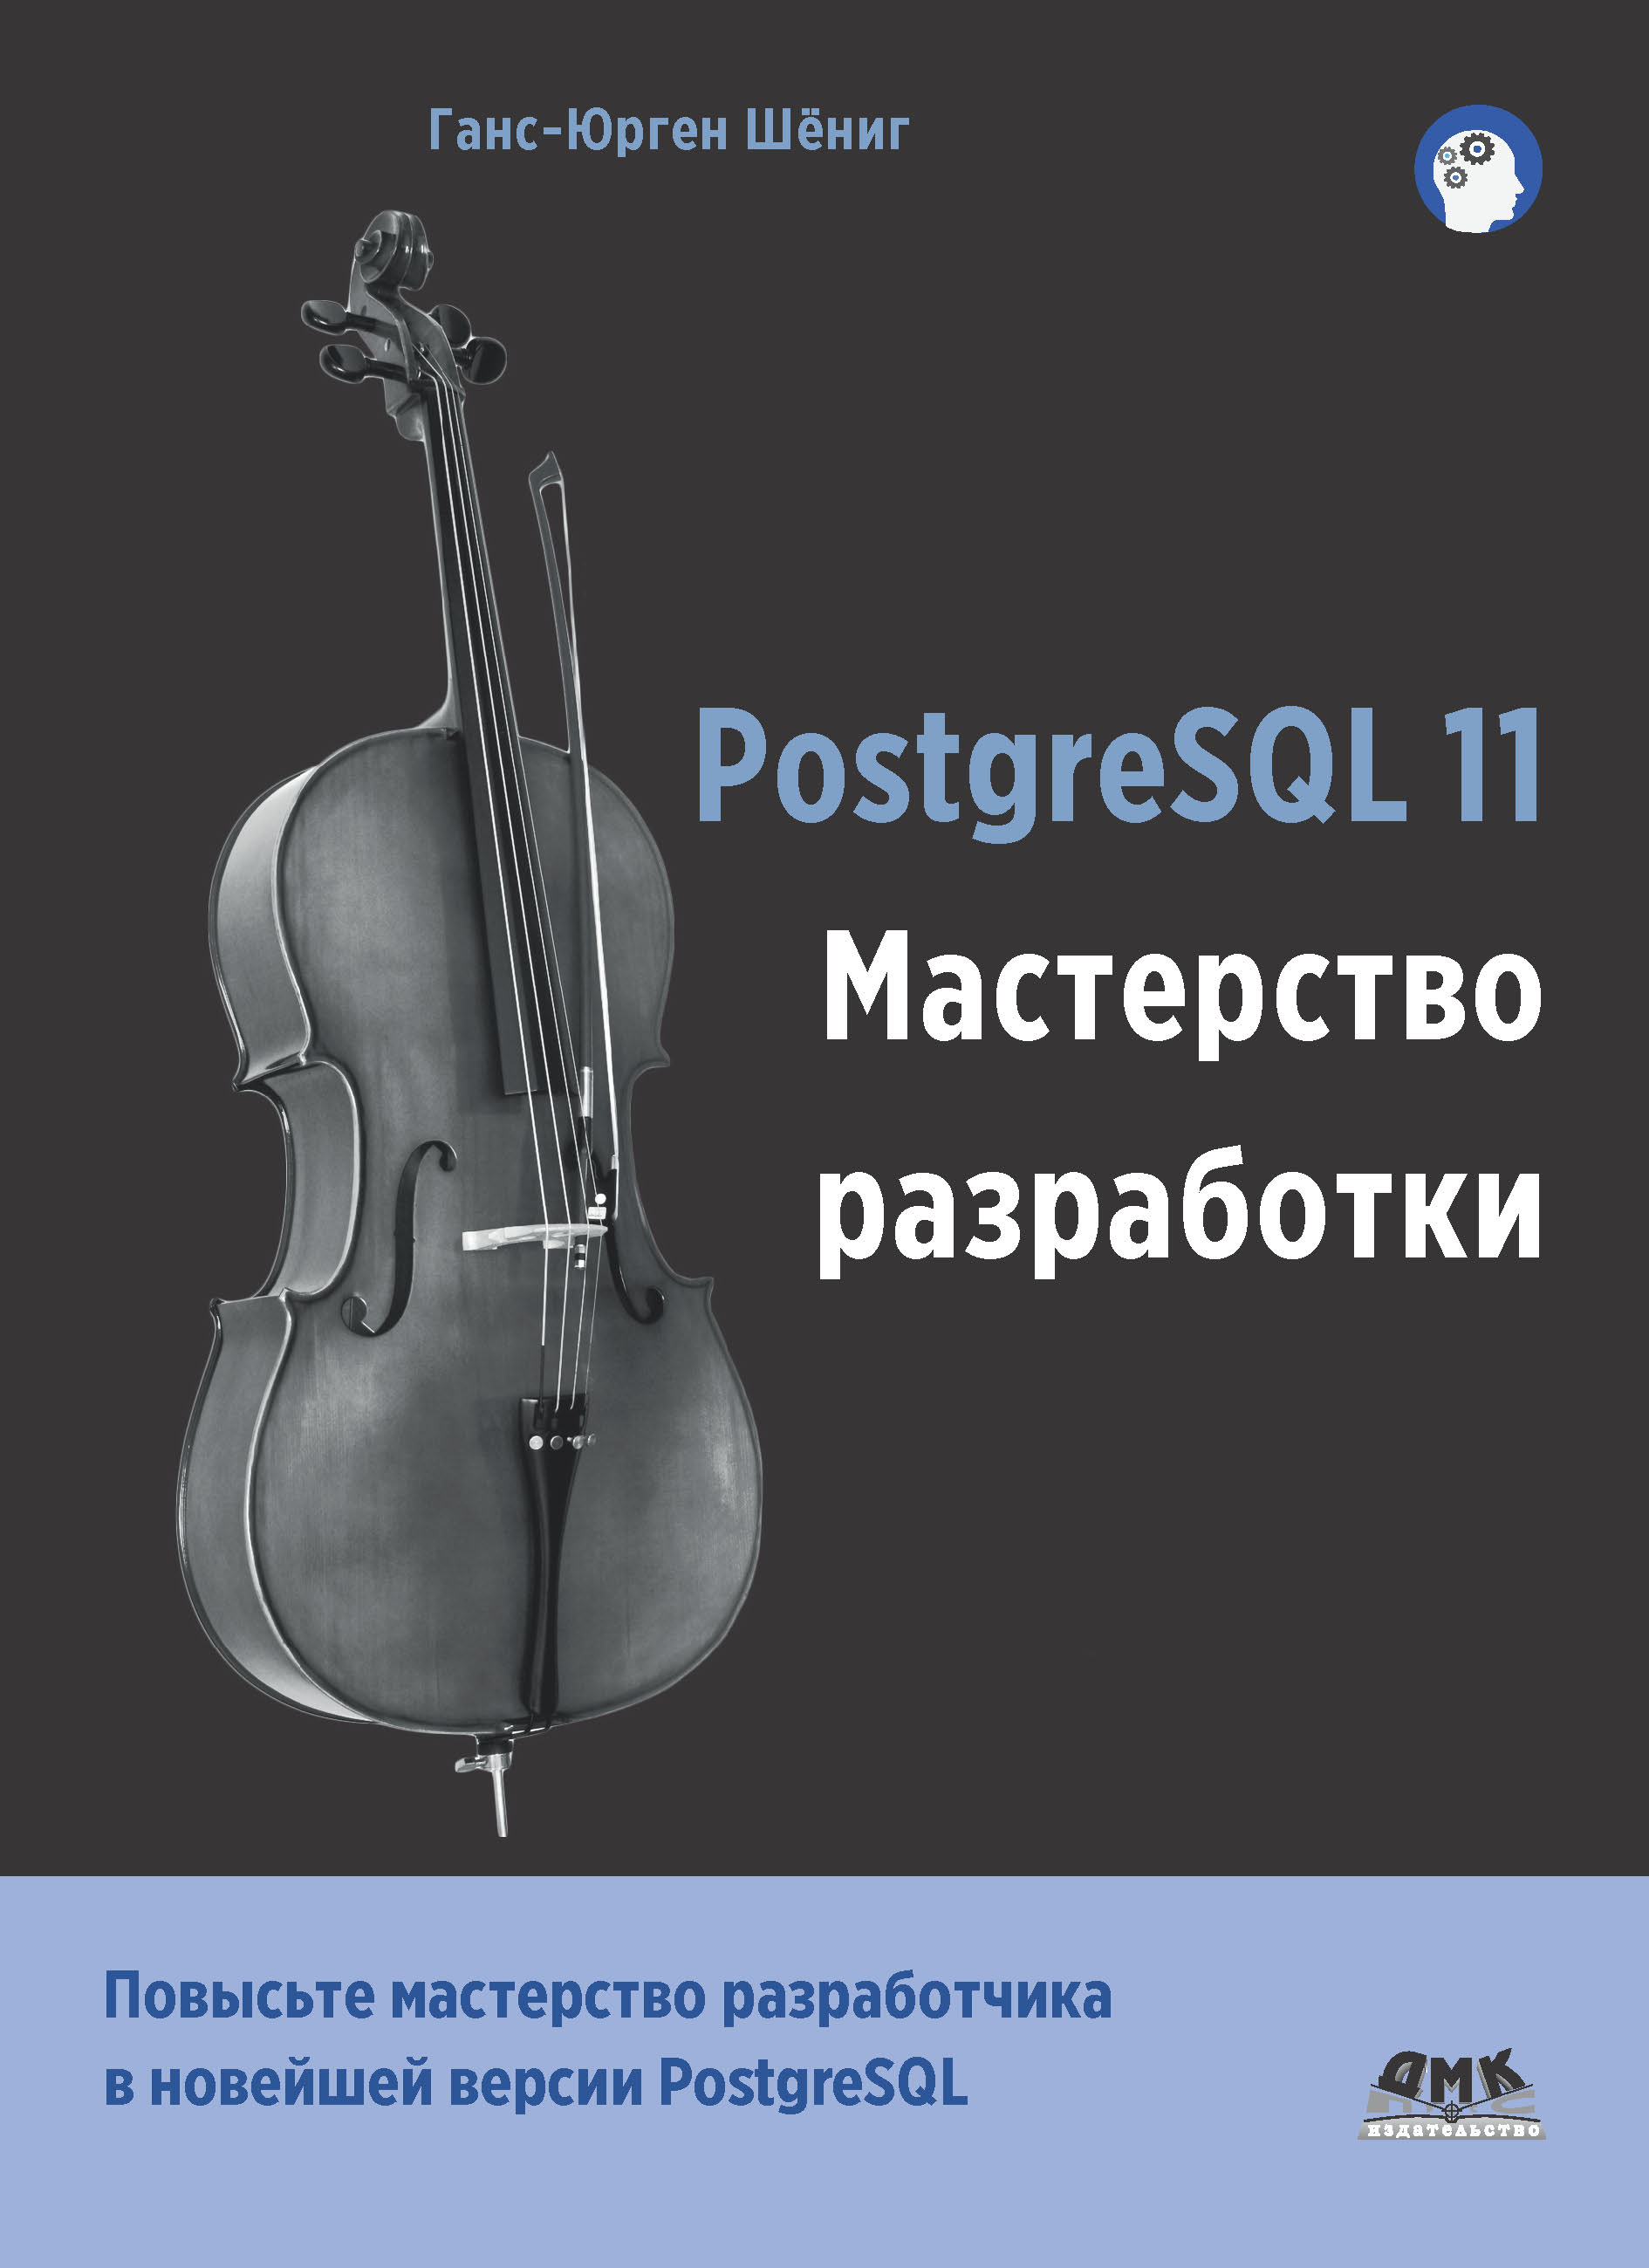 Книга  PostgreSQL 11. Мастерство разработки созданная Ганс-Юрген Шёниг, А. А. Слинкин может относится к жанру базы данных, зарубежная компьютерная литература, программирование. Стоимость электронной книги PostgreSQL 11. Мастерство разработки с идентификатором 48411423 составляет 790.00 руб.